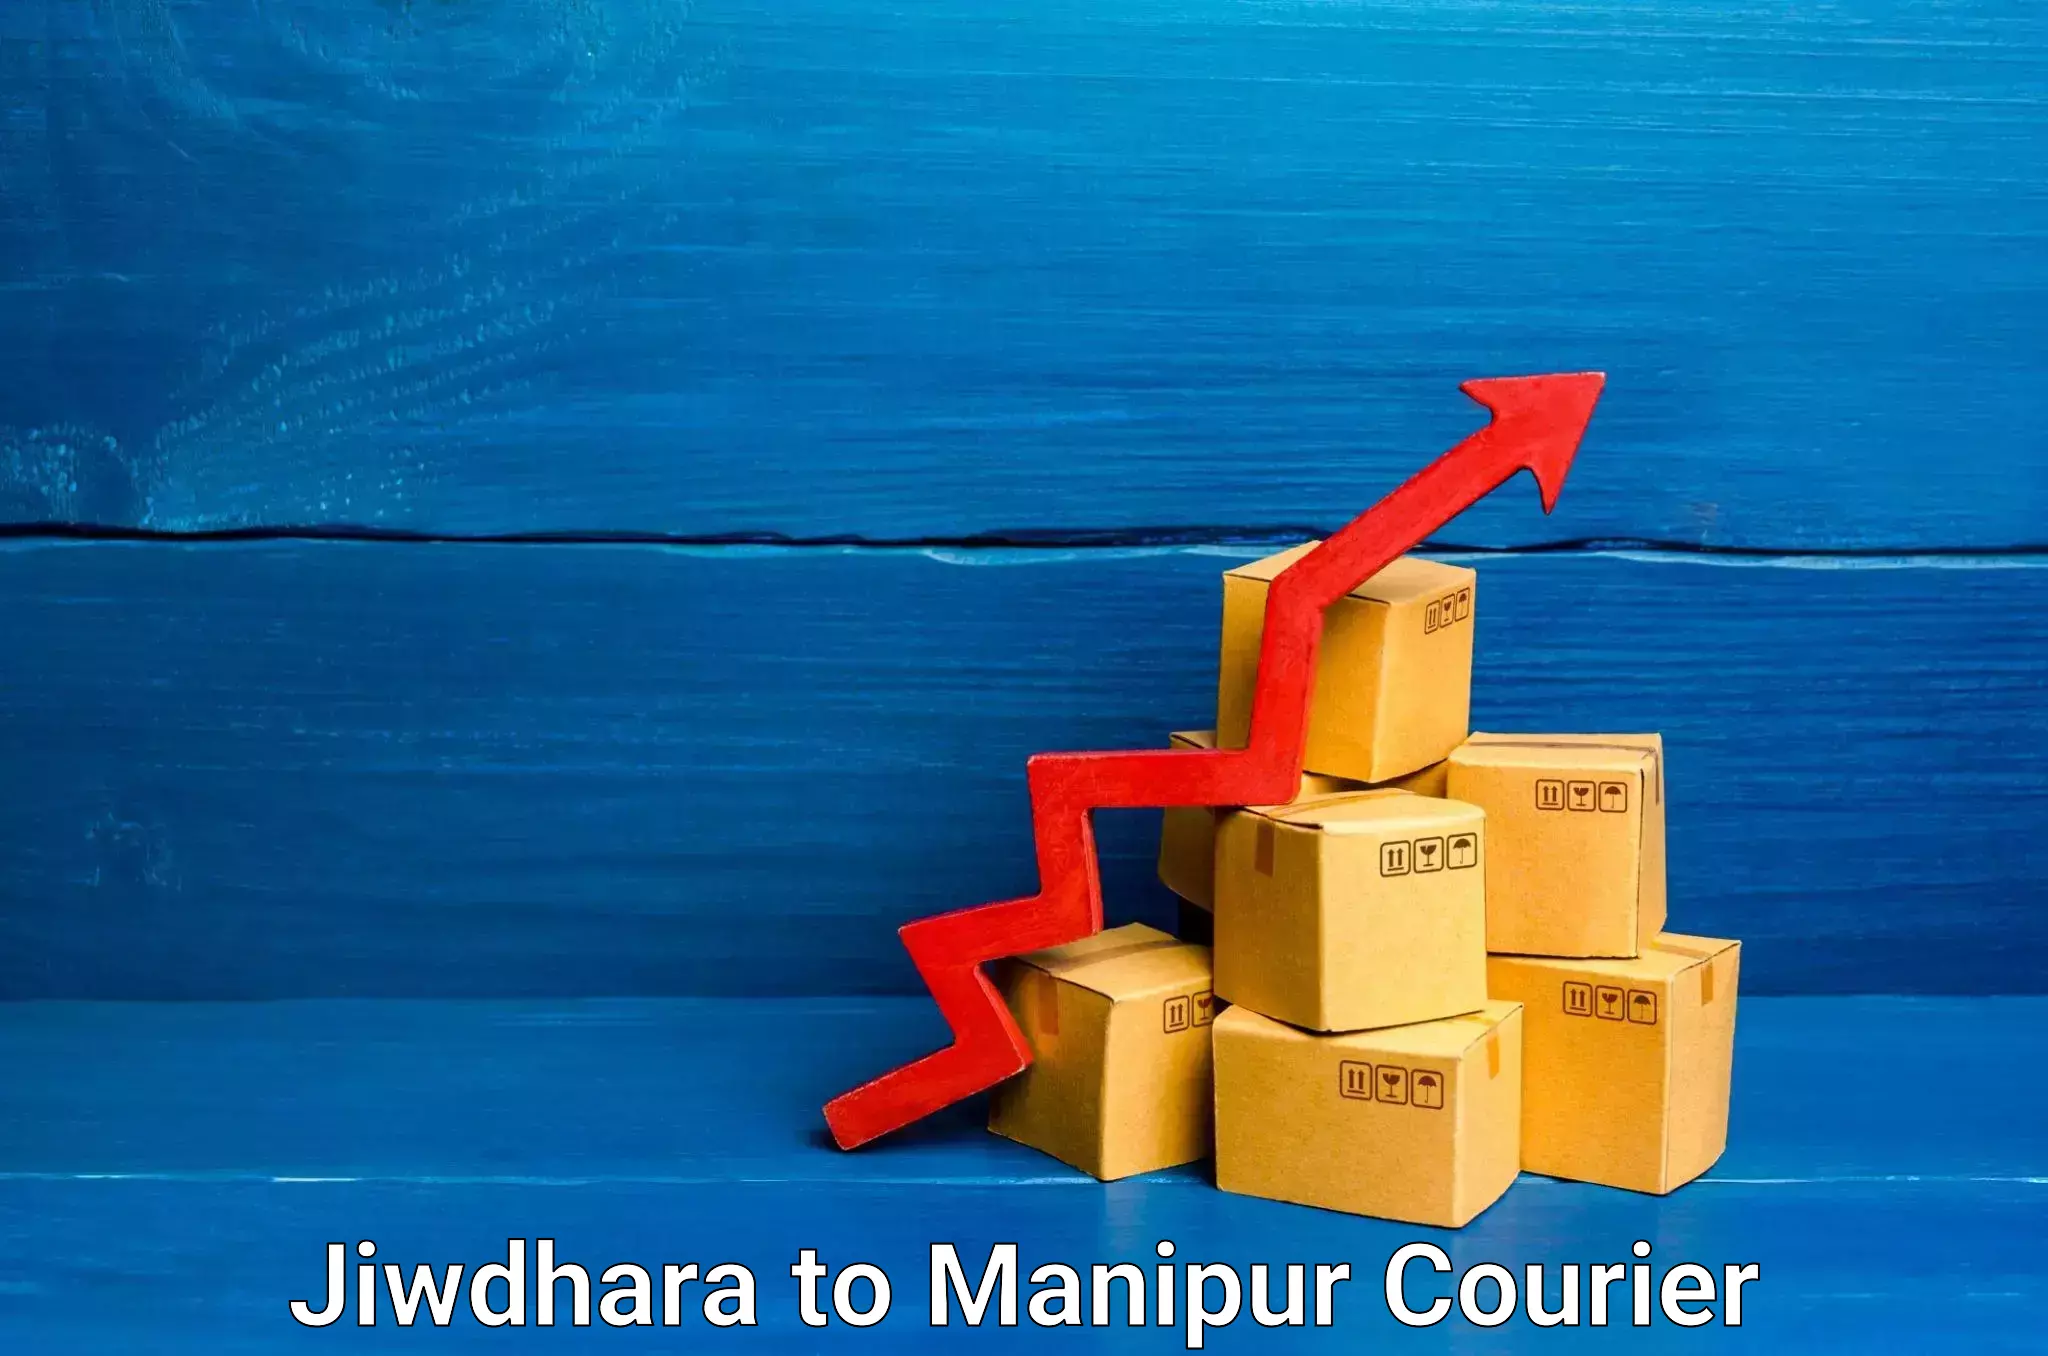 Furniture transport and logistics Jiwdhara to Manipur